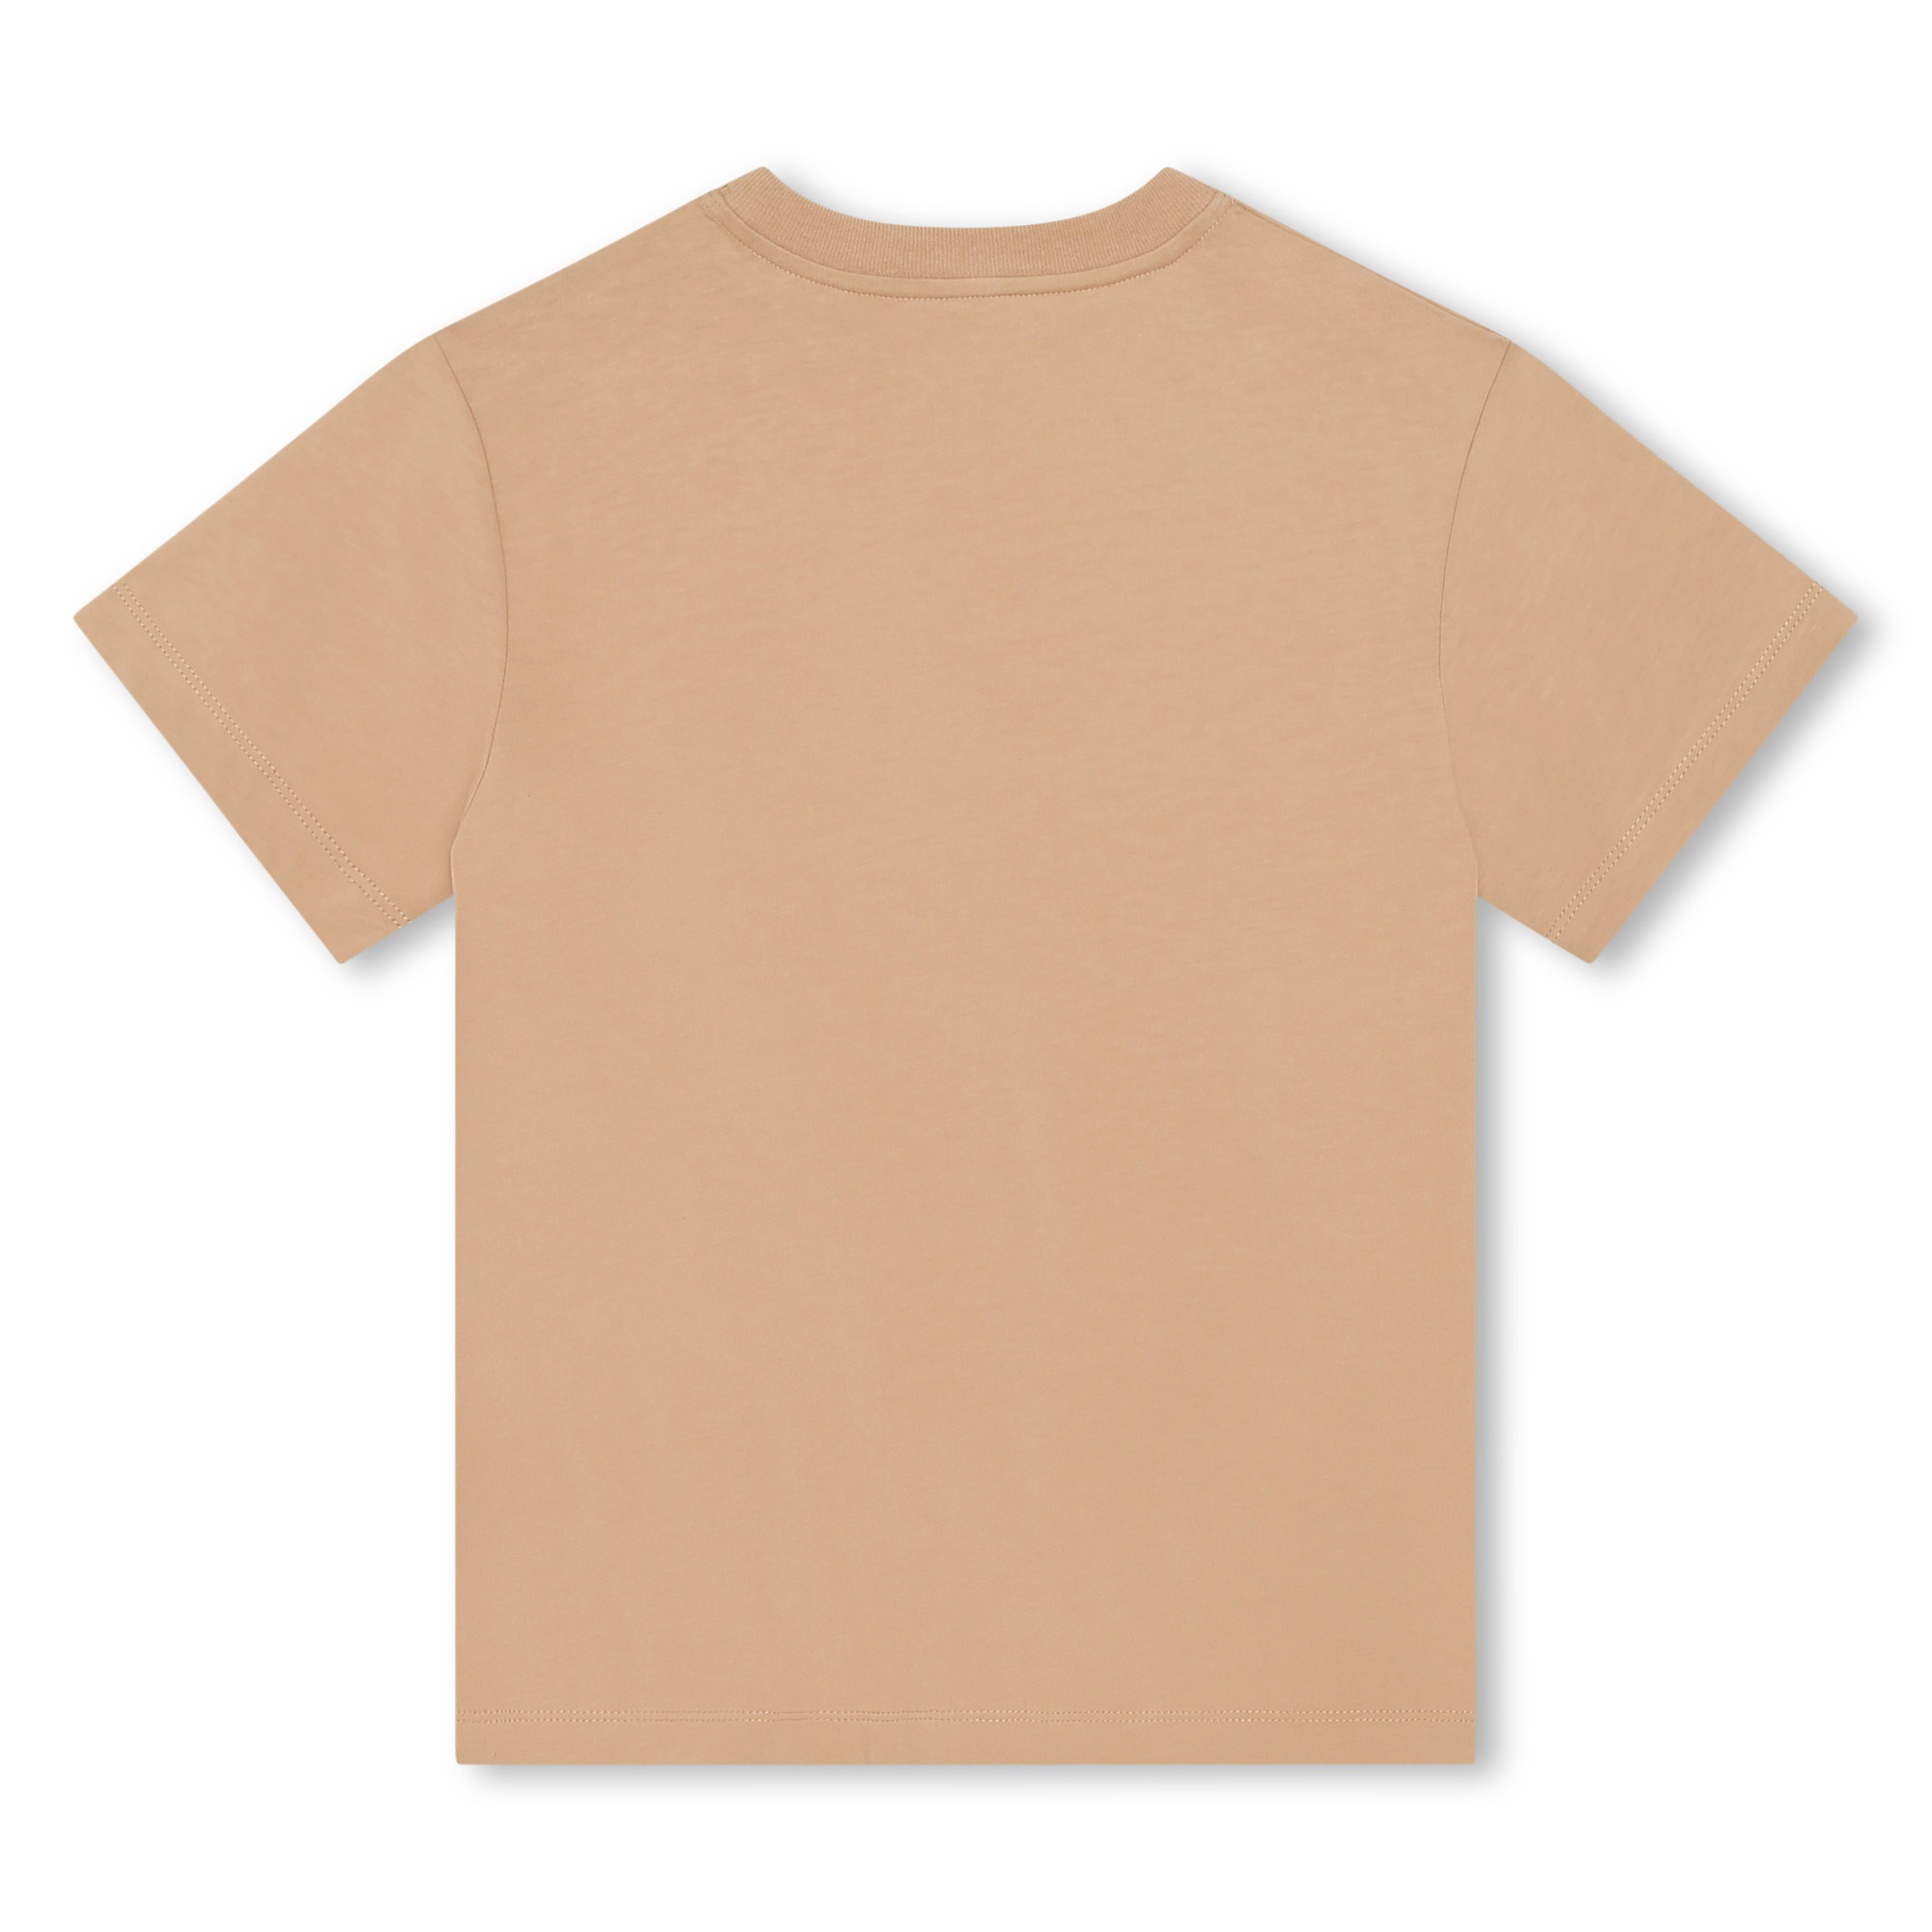 Baumwoll-T-Shirt mit Motiv LANVIN Für JUNGE